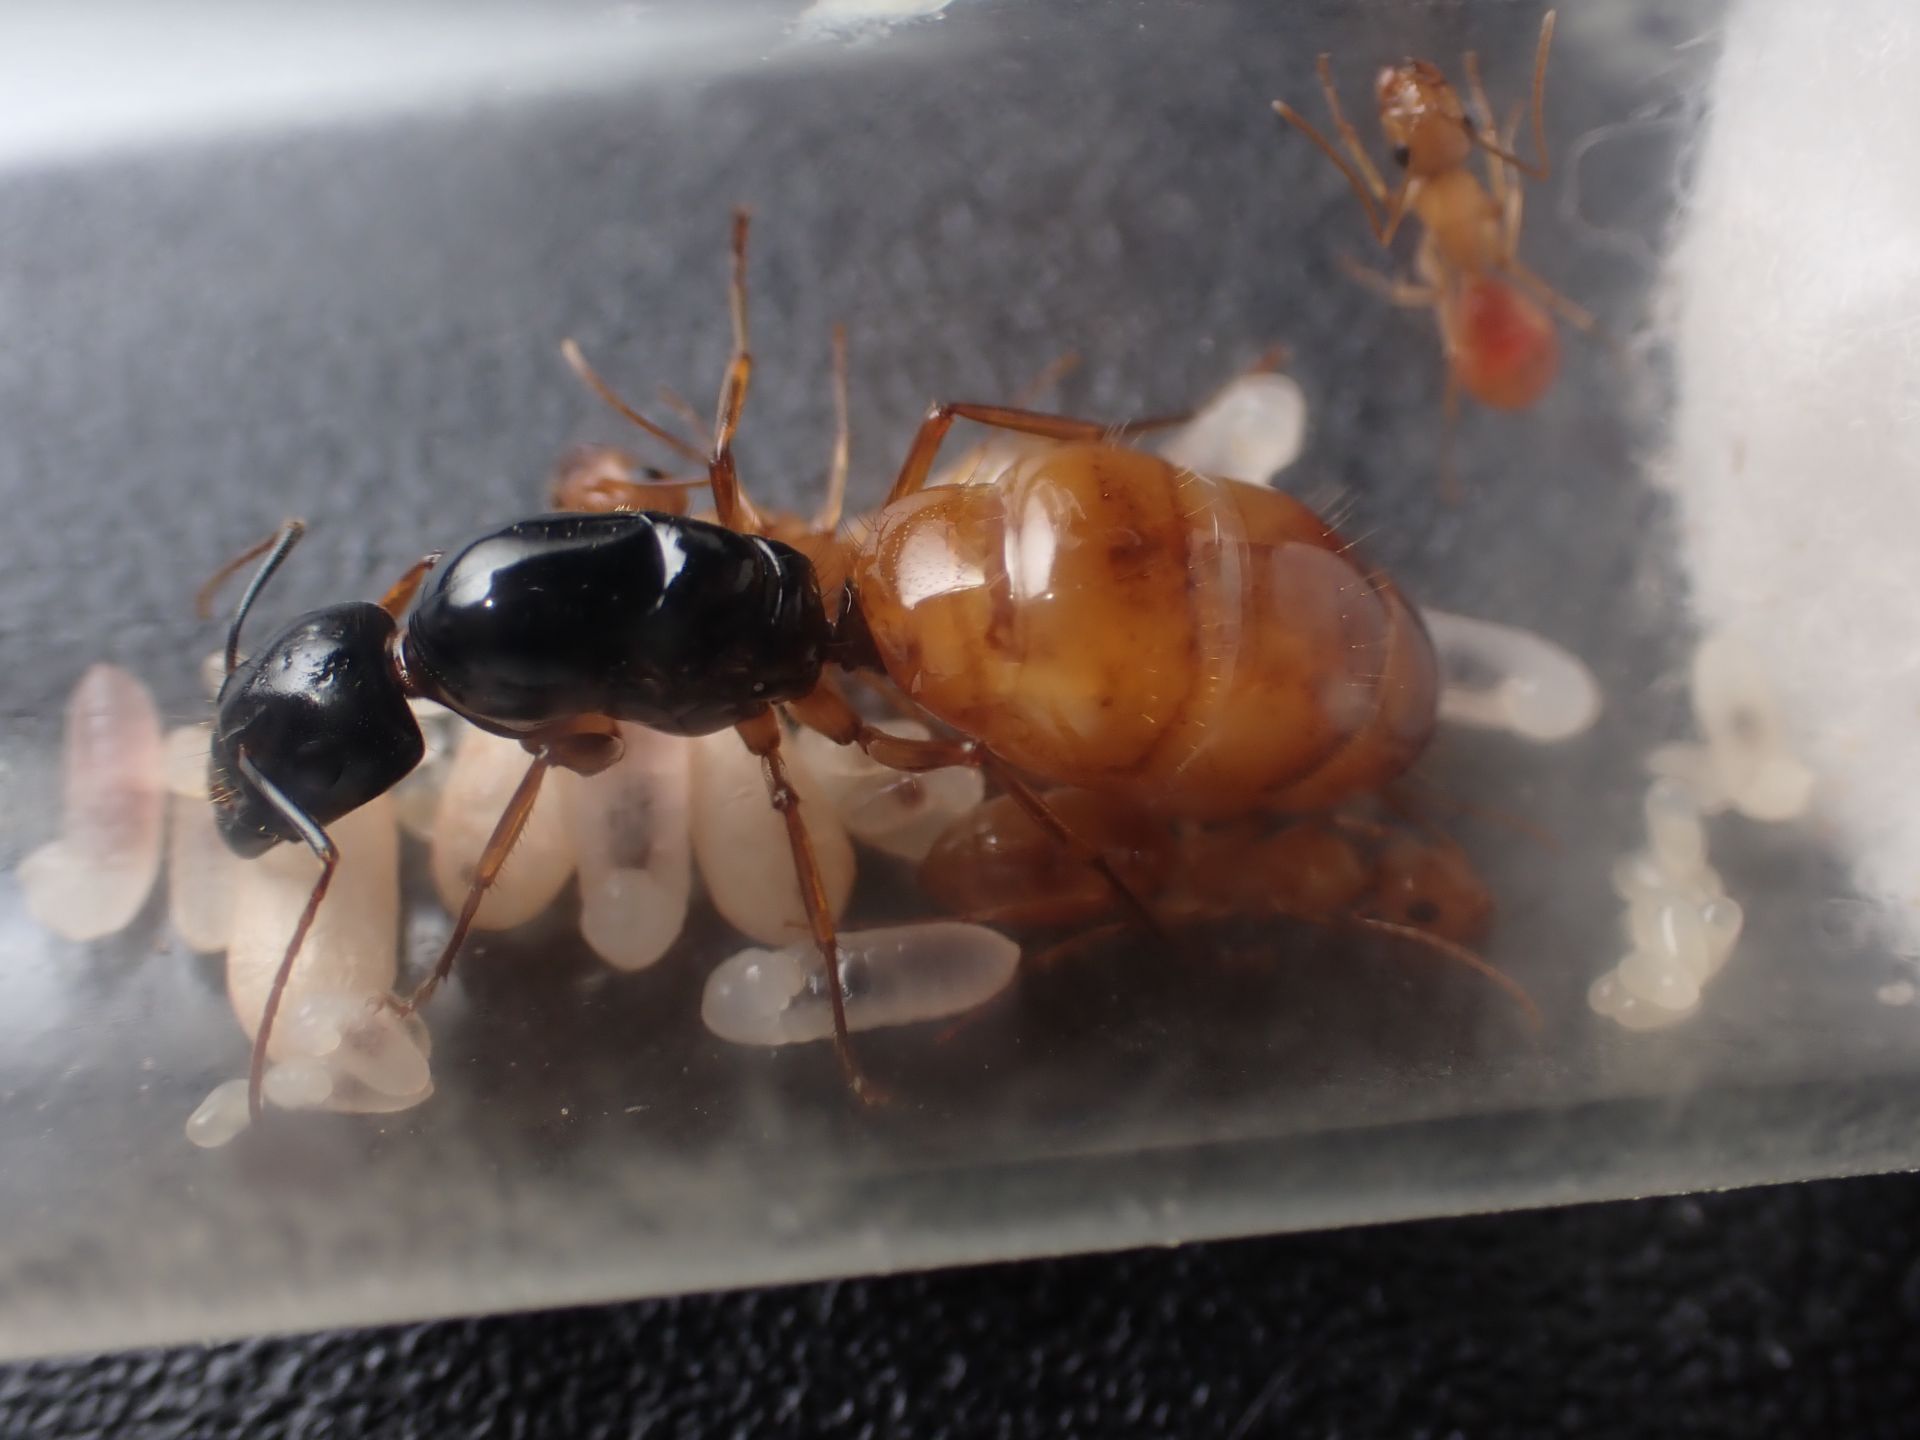 Camponotus semitestaceus 3